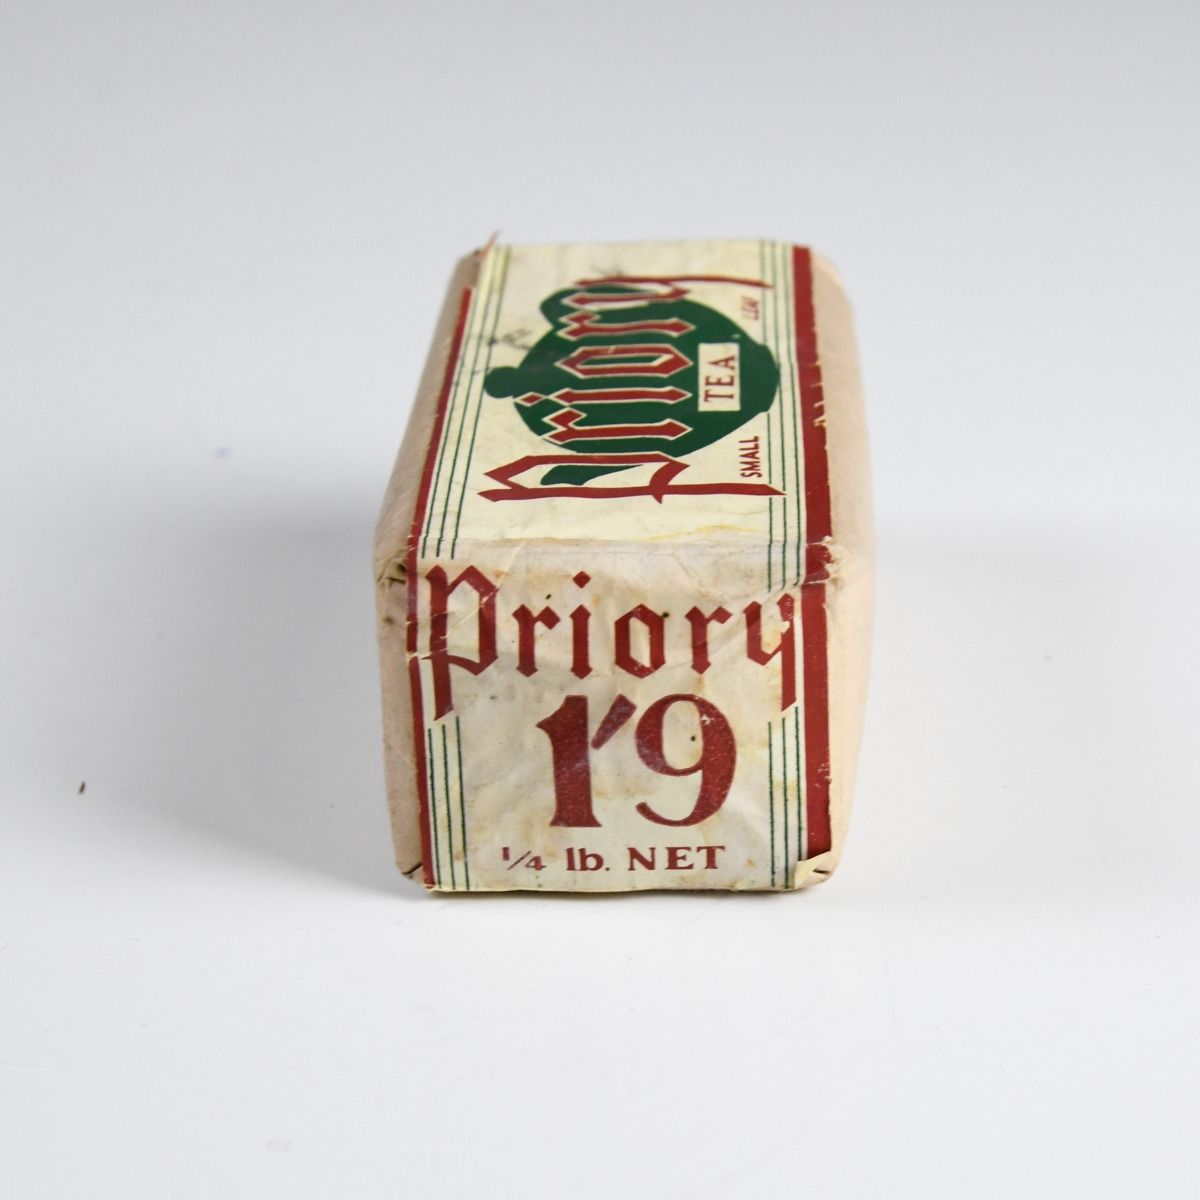 Vintage 1950s Packet of Priory Tea